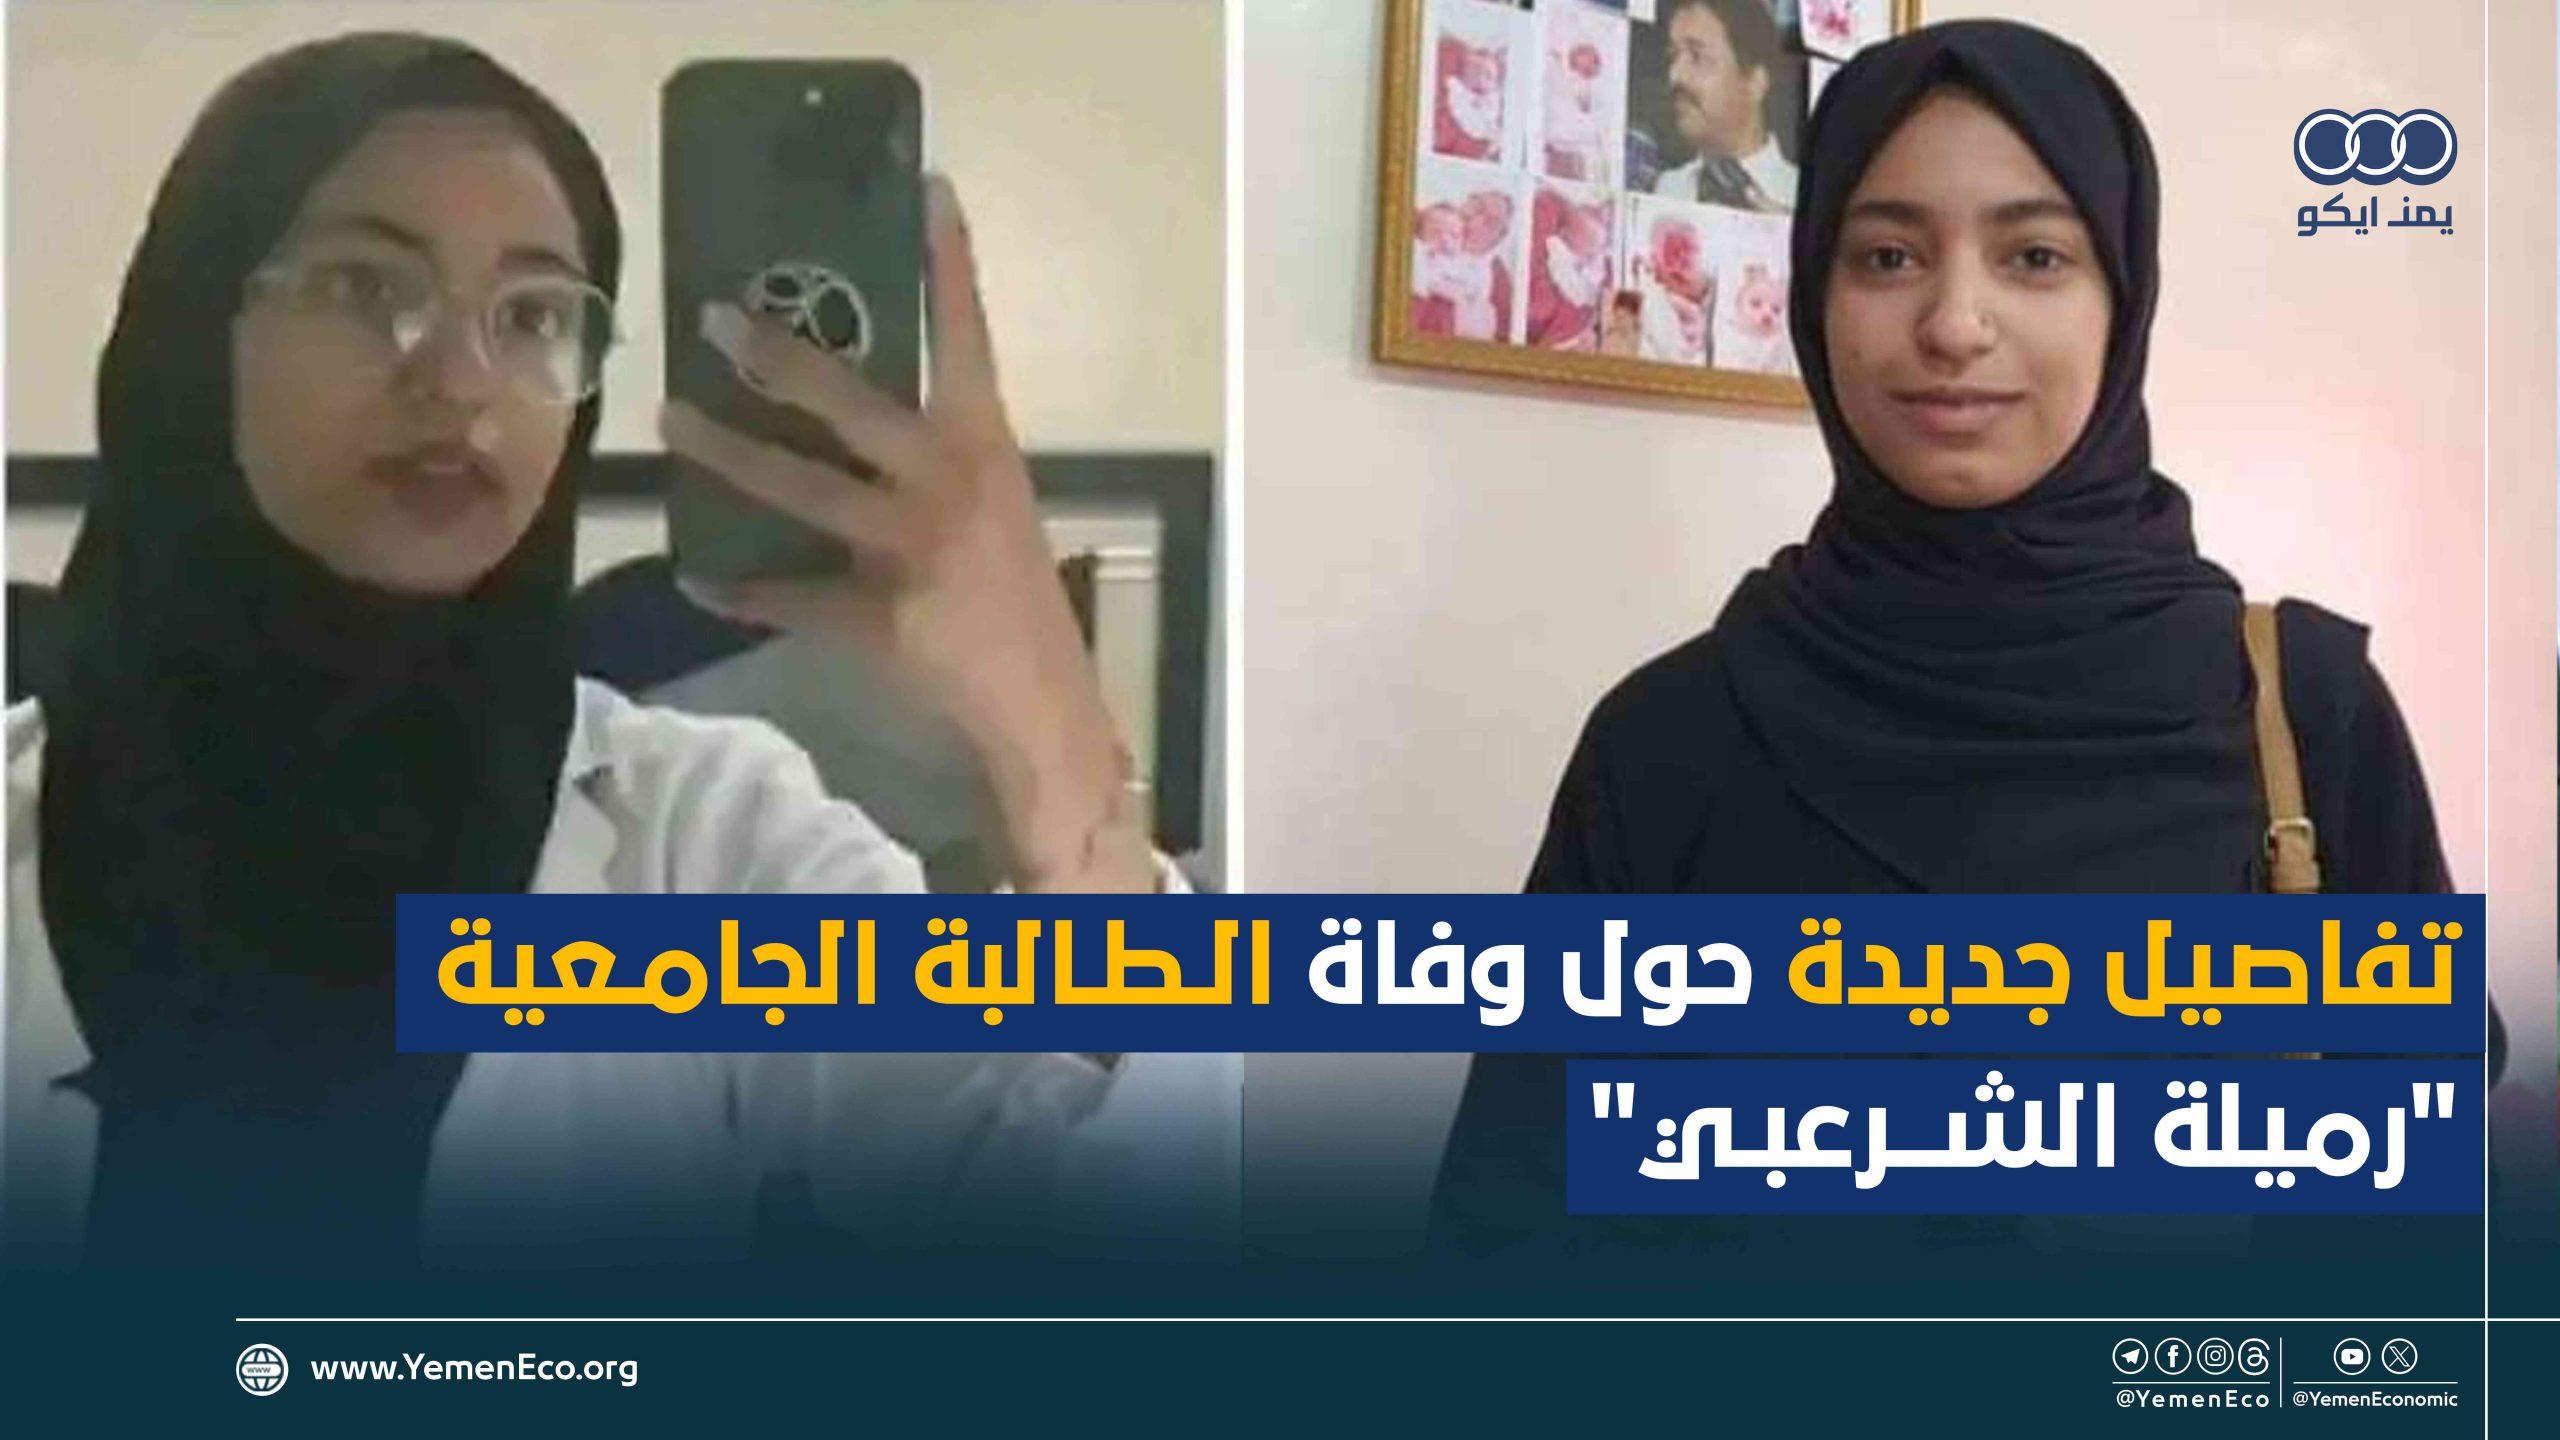 شاهد| التفاصيل الكاملة لأسباب انتحار طالبة جامعة الرازي رميلة الشرعبي في صنعاء وكيف تعرضت للابتزاز